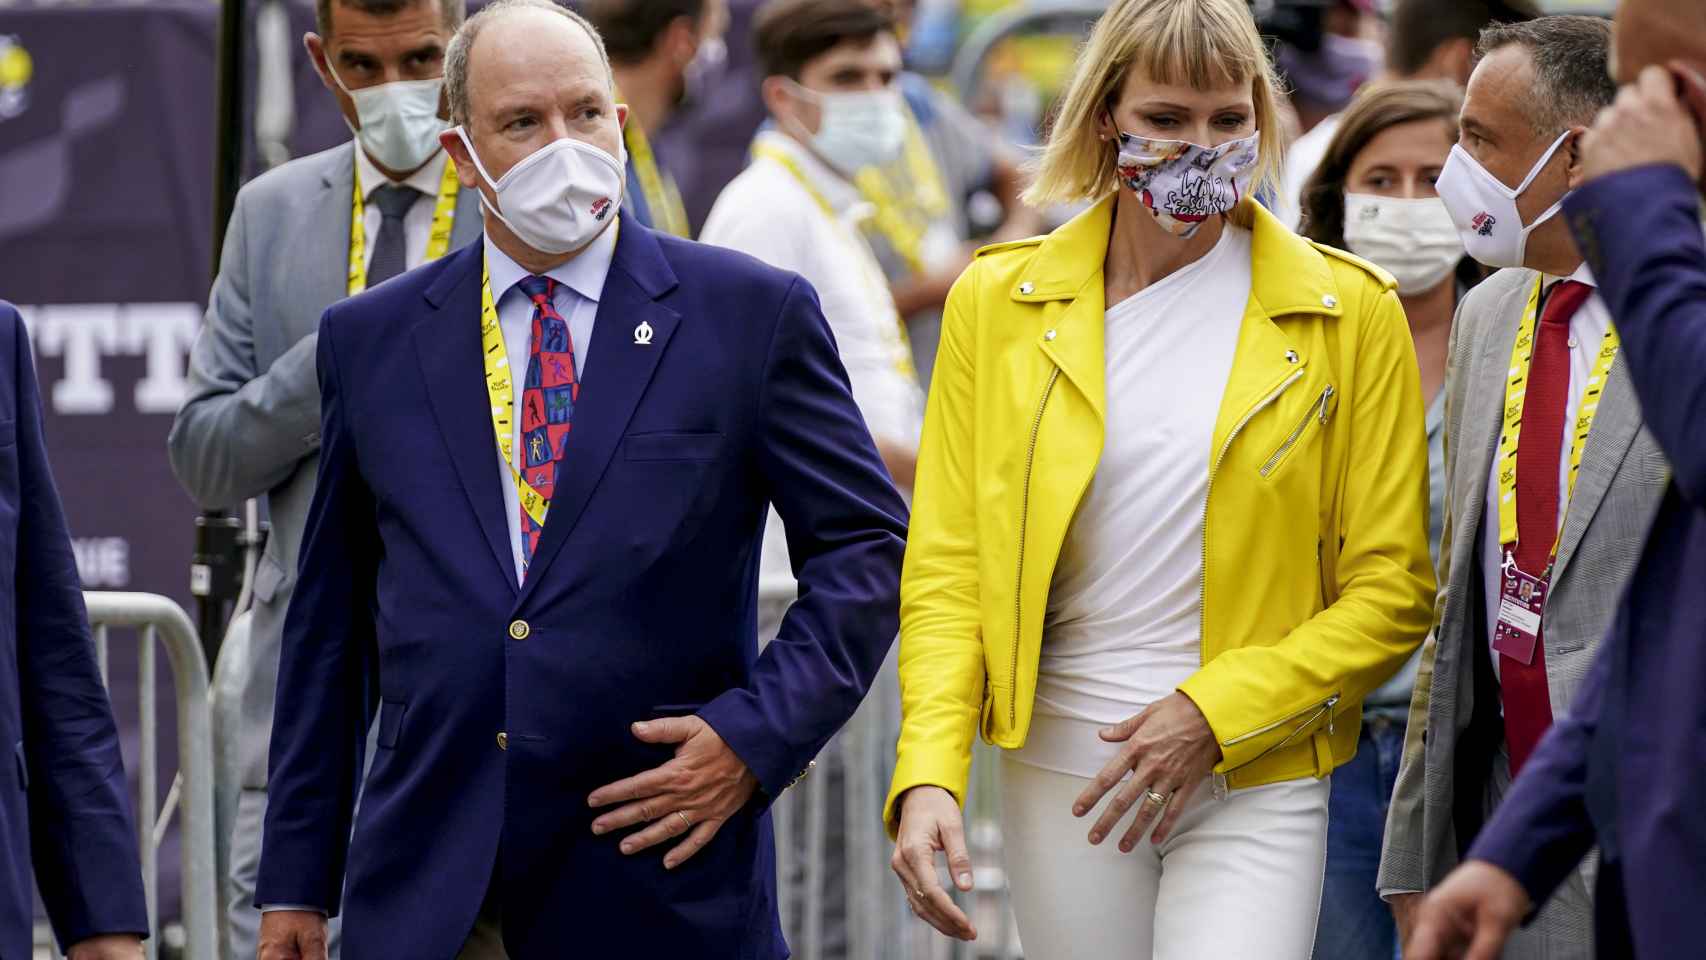 Charléne de Mónaco y el príncipe Alberto, durante el Tour de Francia, en agosto de 2020.